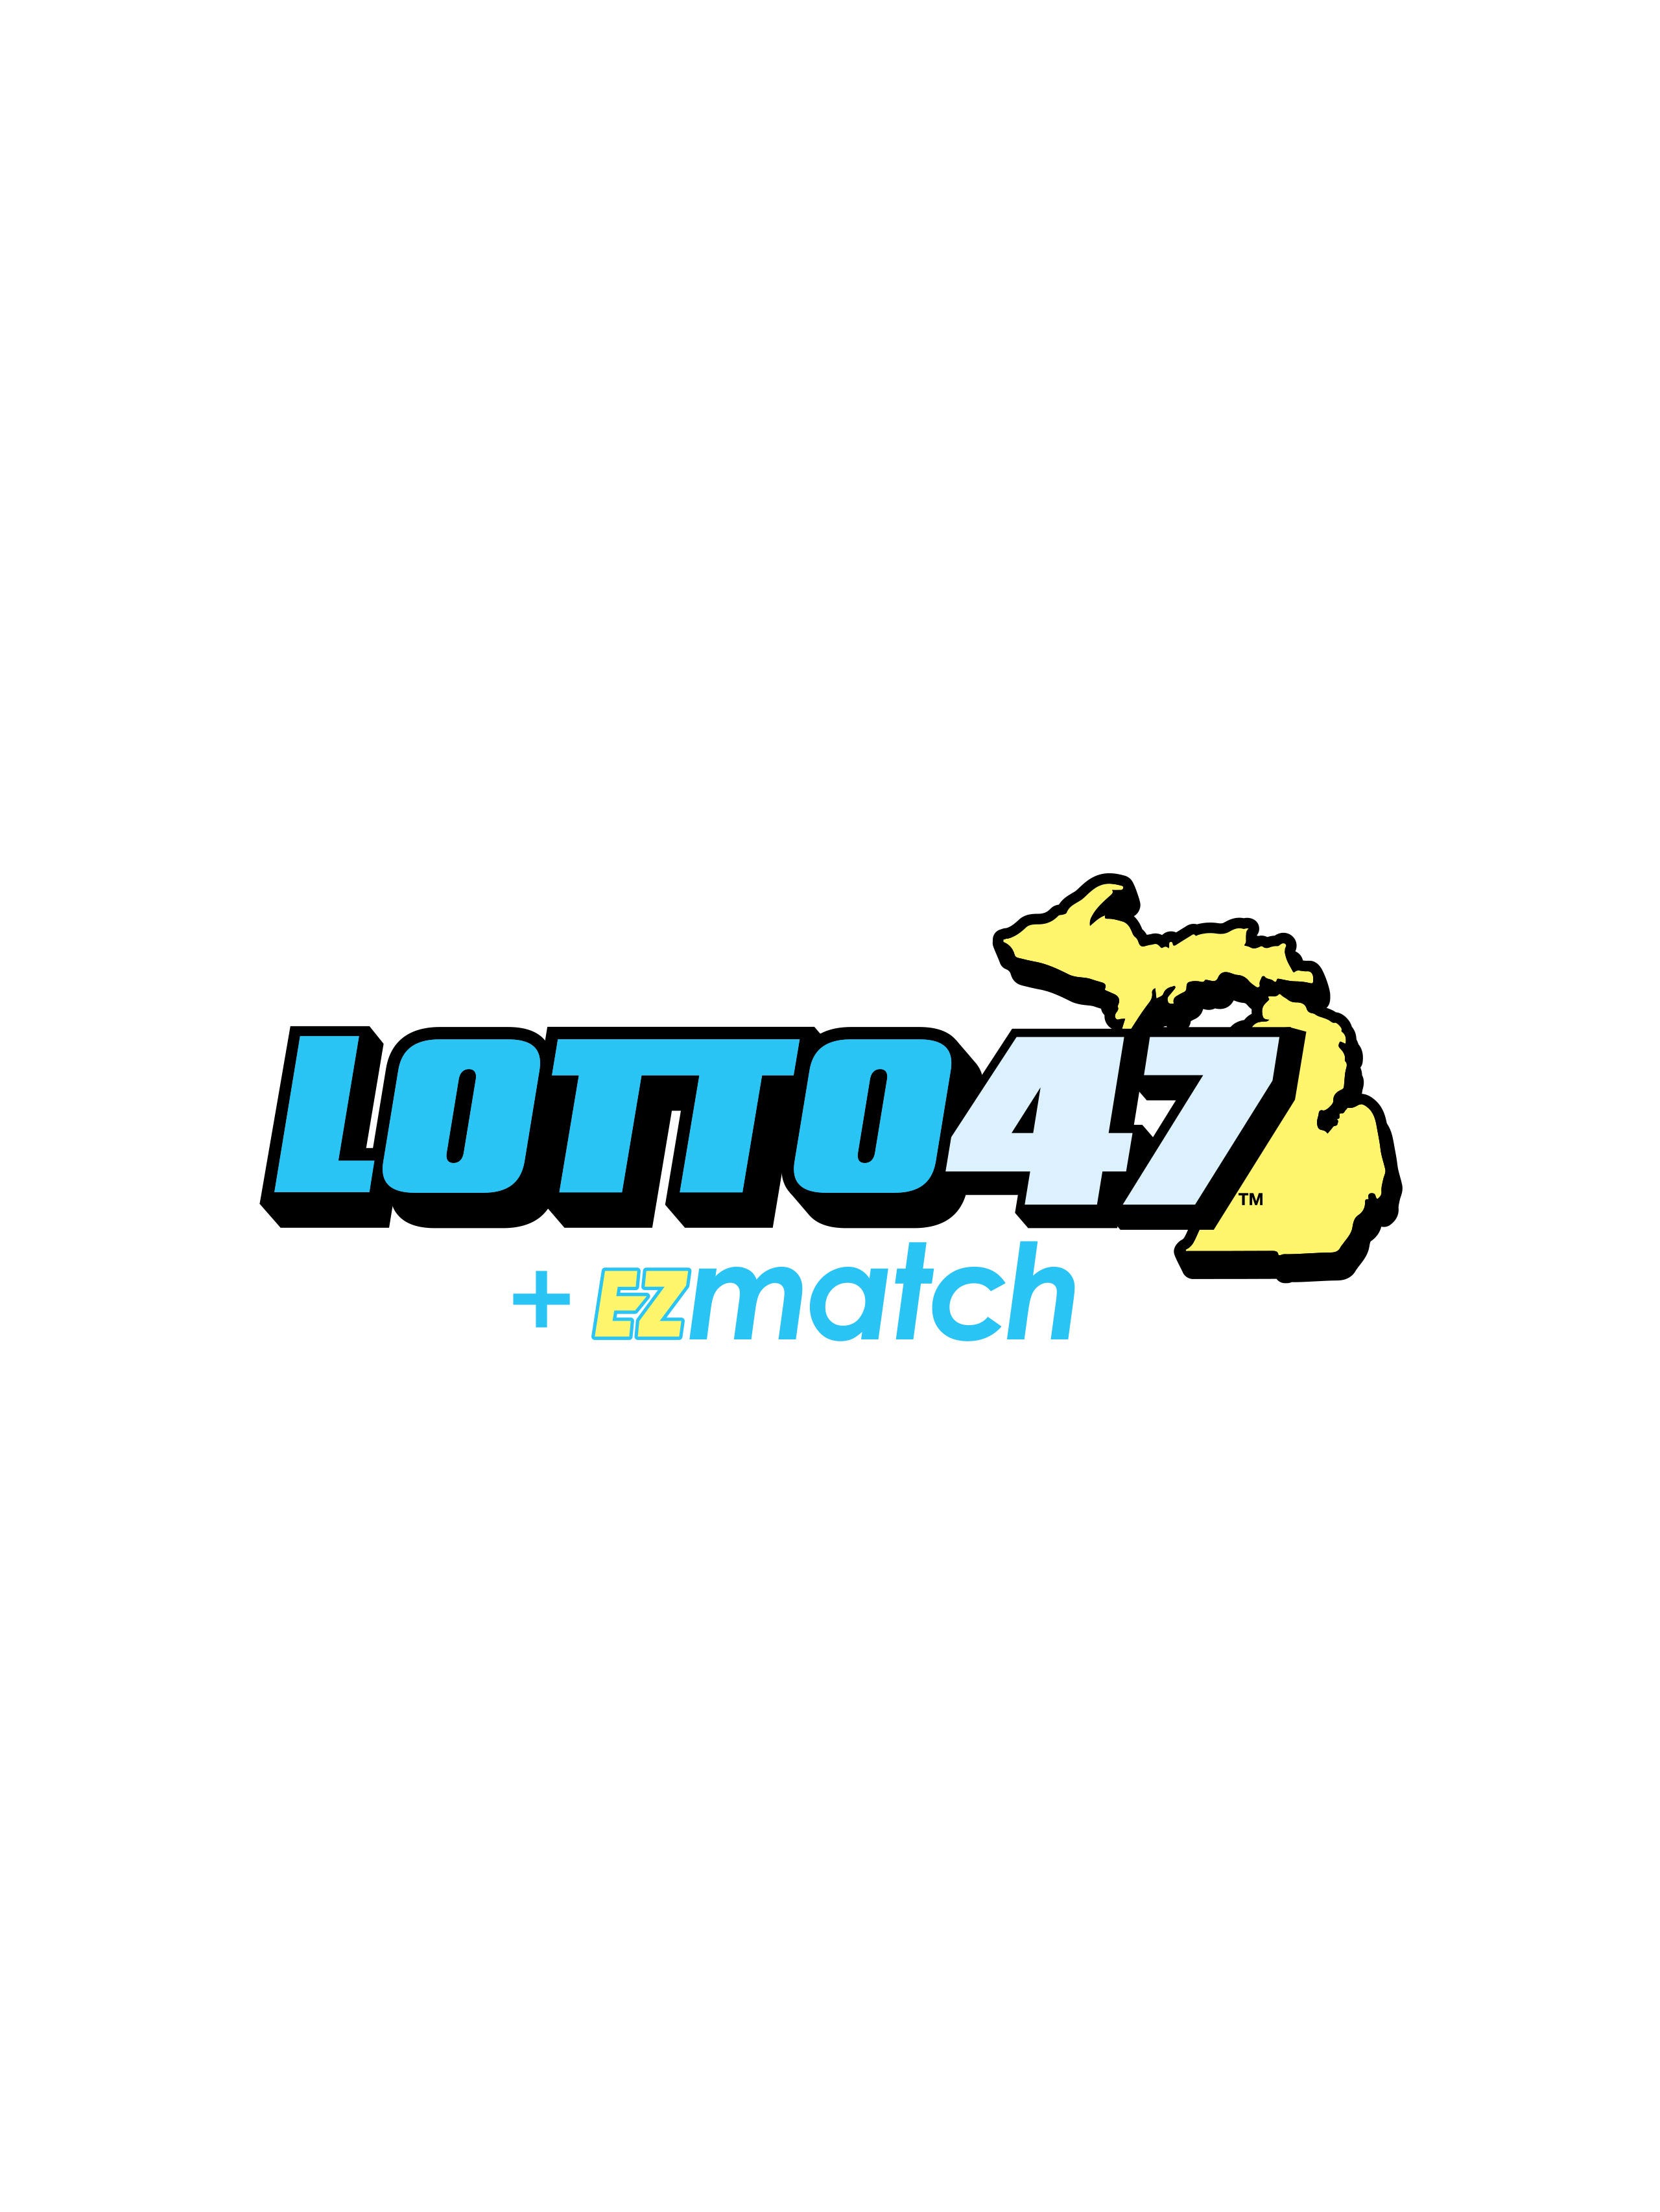 lotto 47 winning